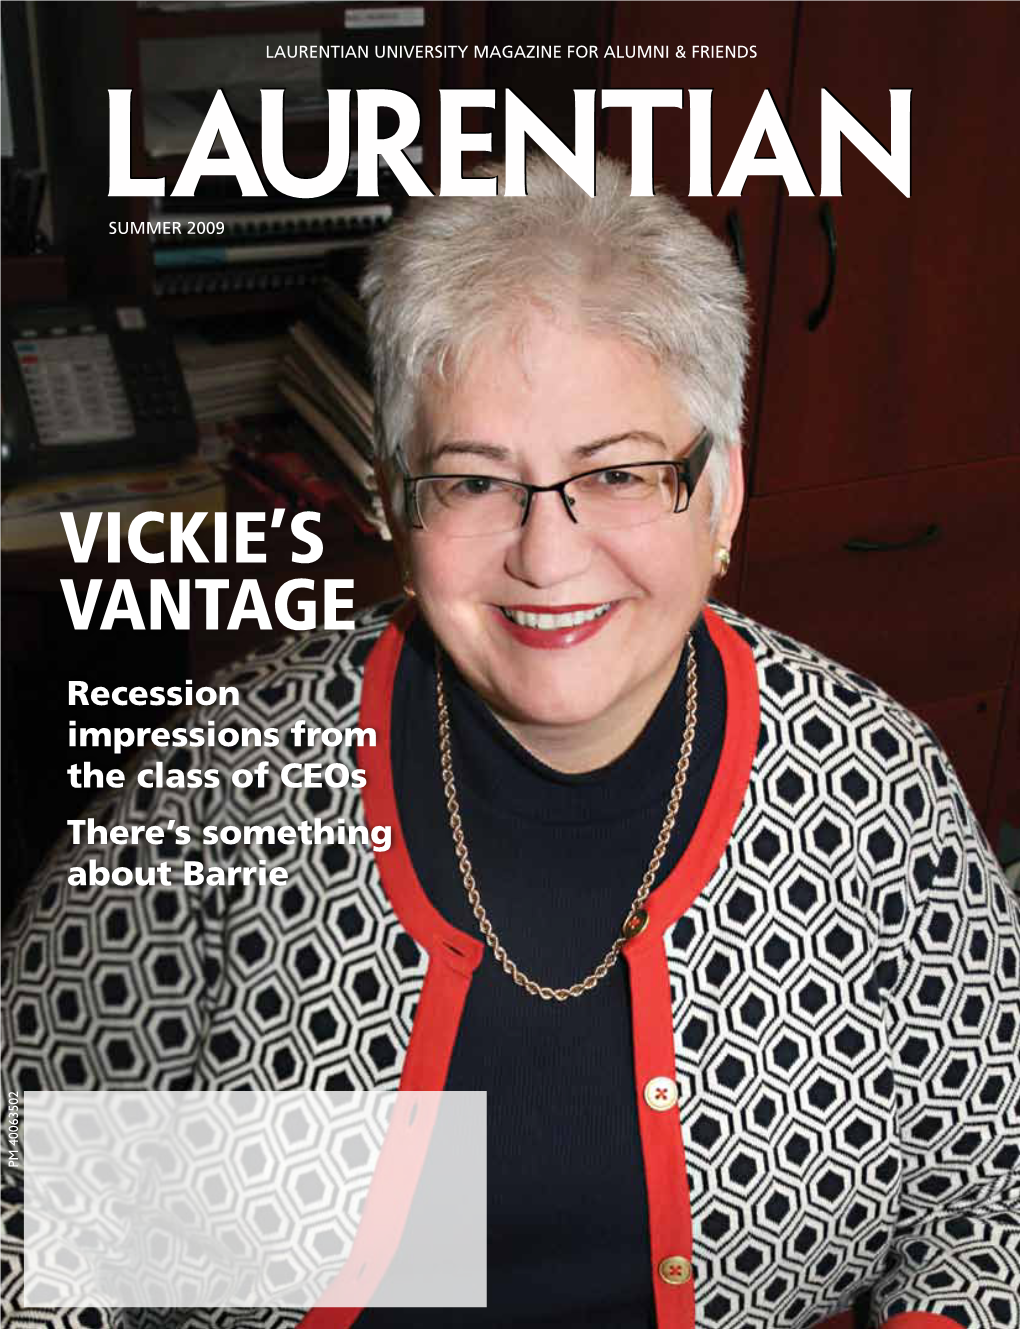 Vickie's Vantage